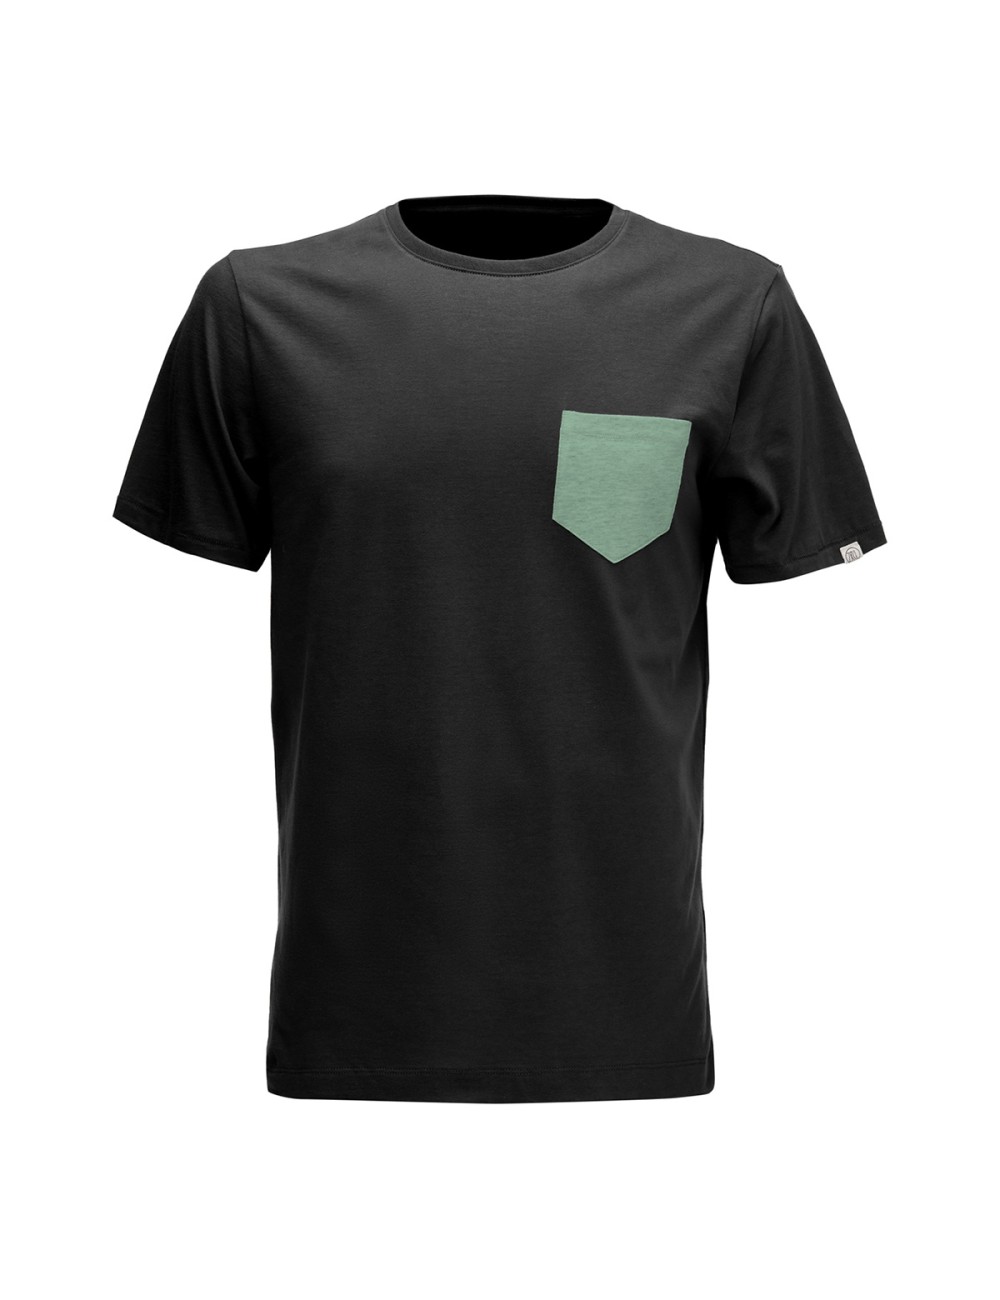 ZRCL Pocket T-Shirt - Black/Green